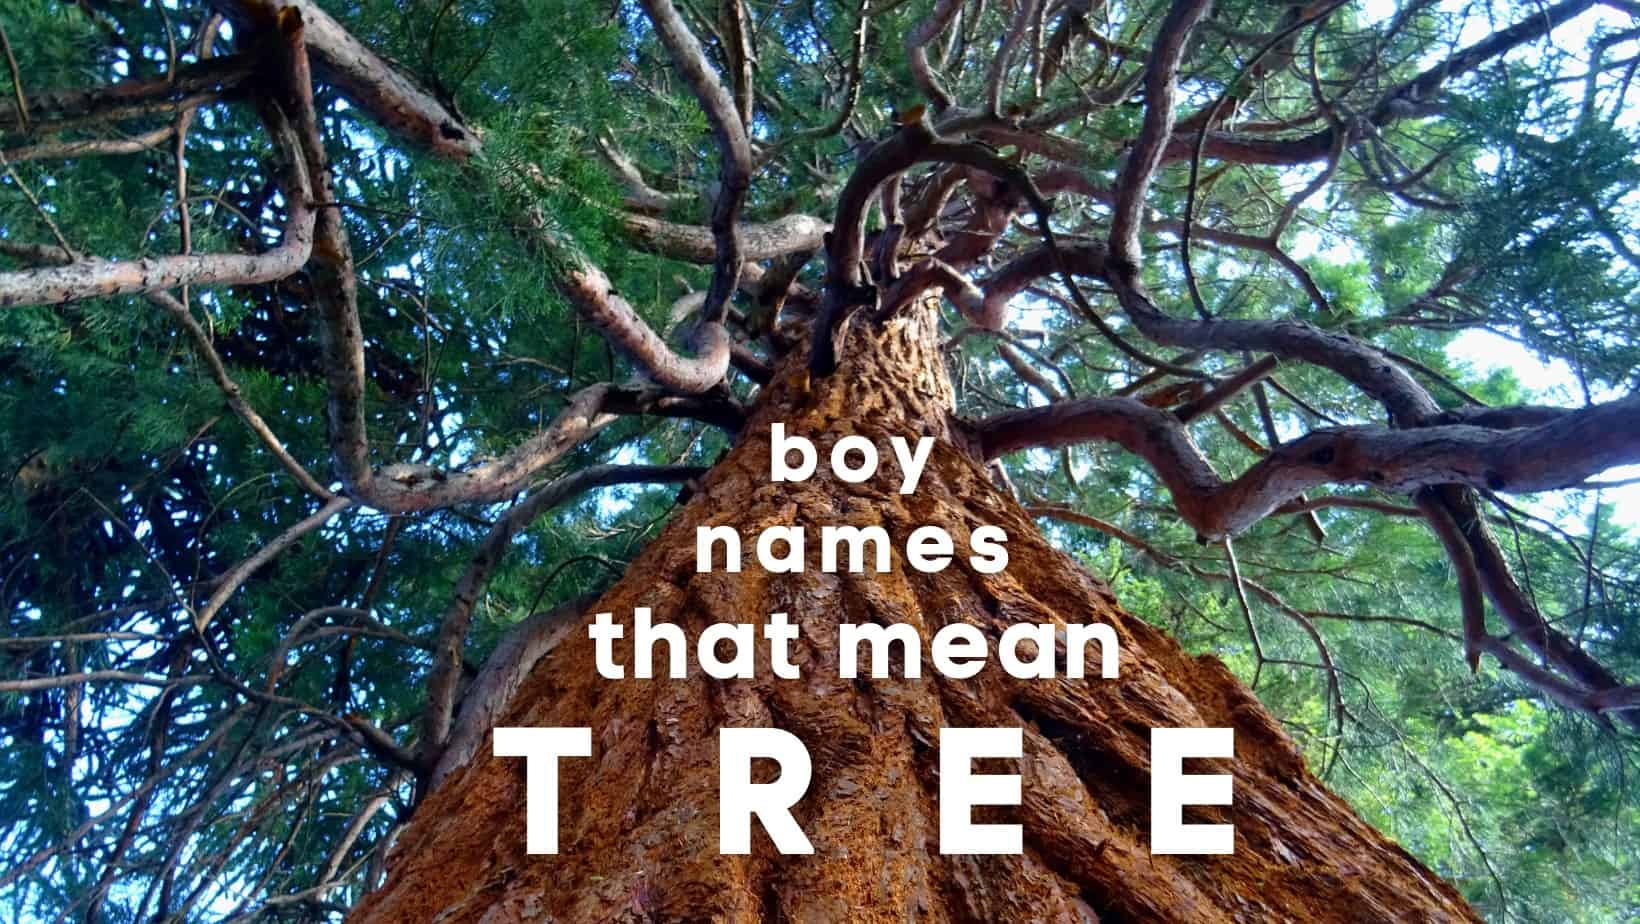 Boy names that mean tree